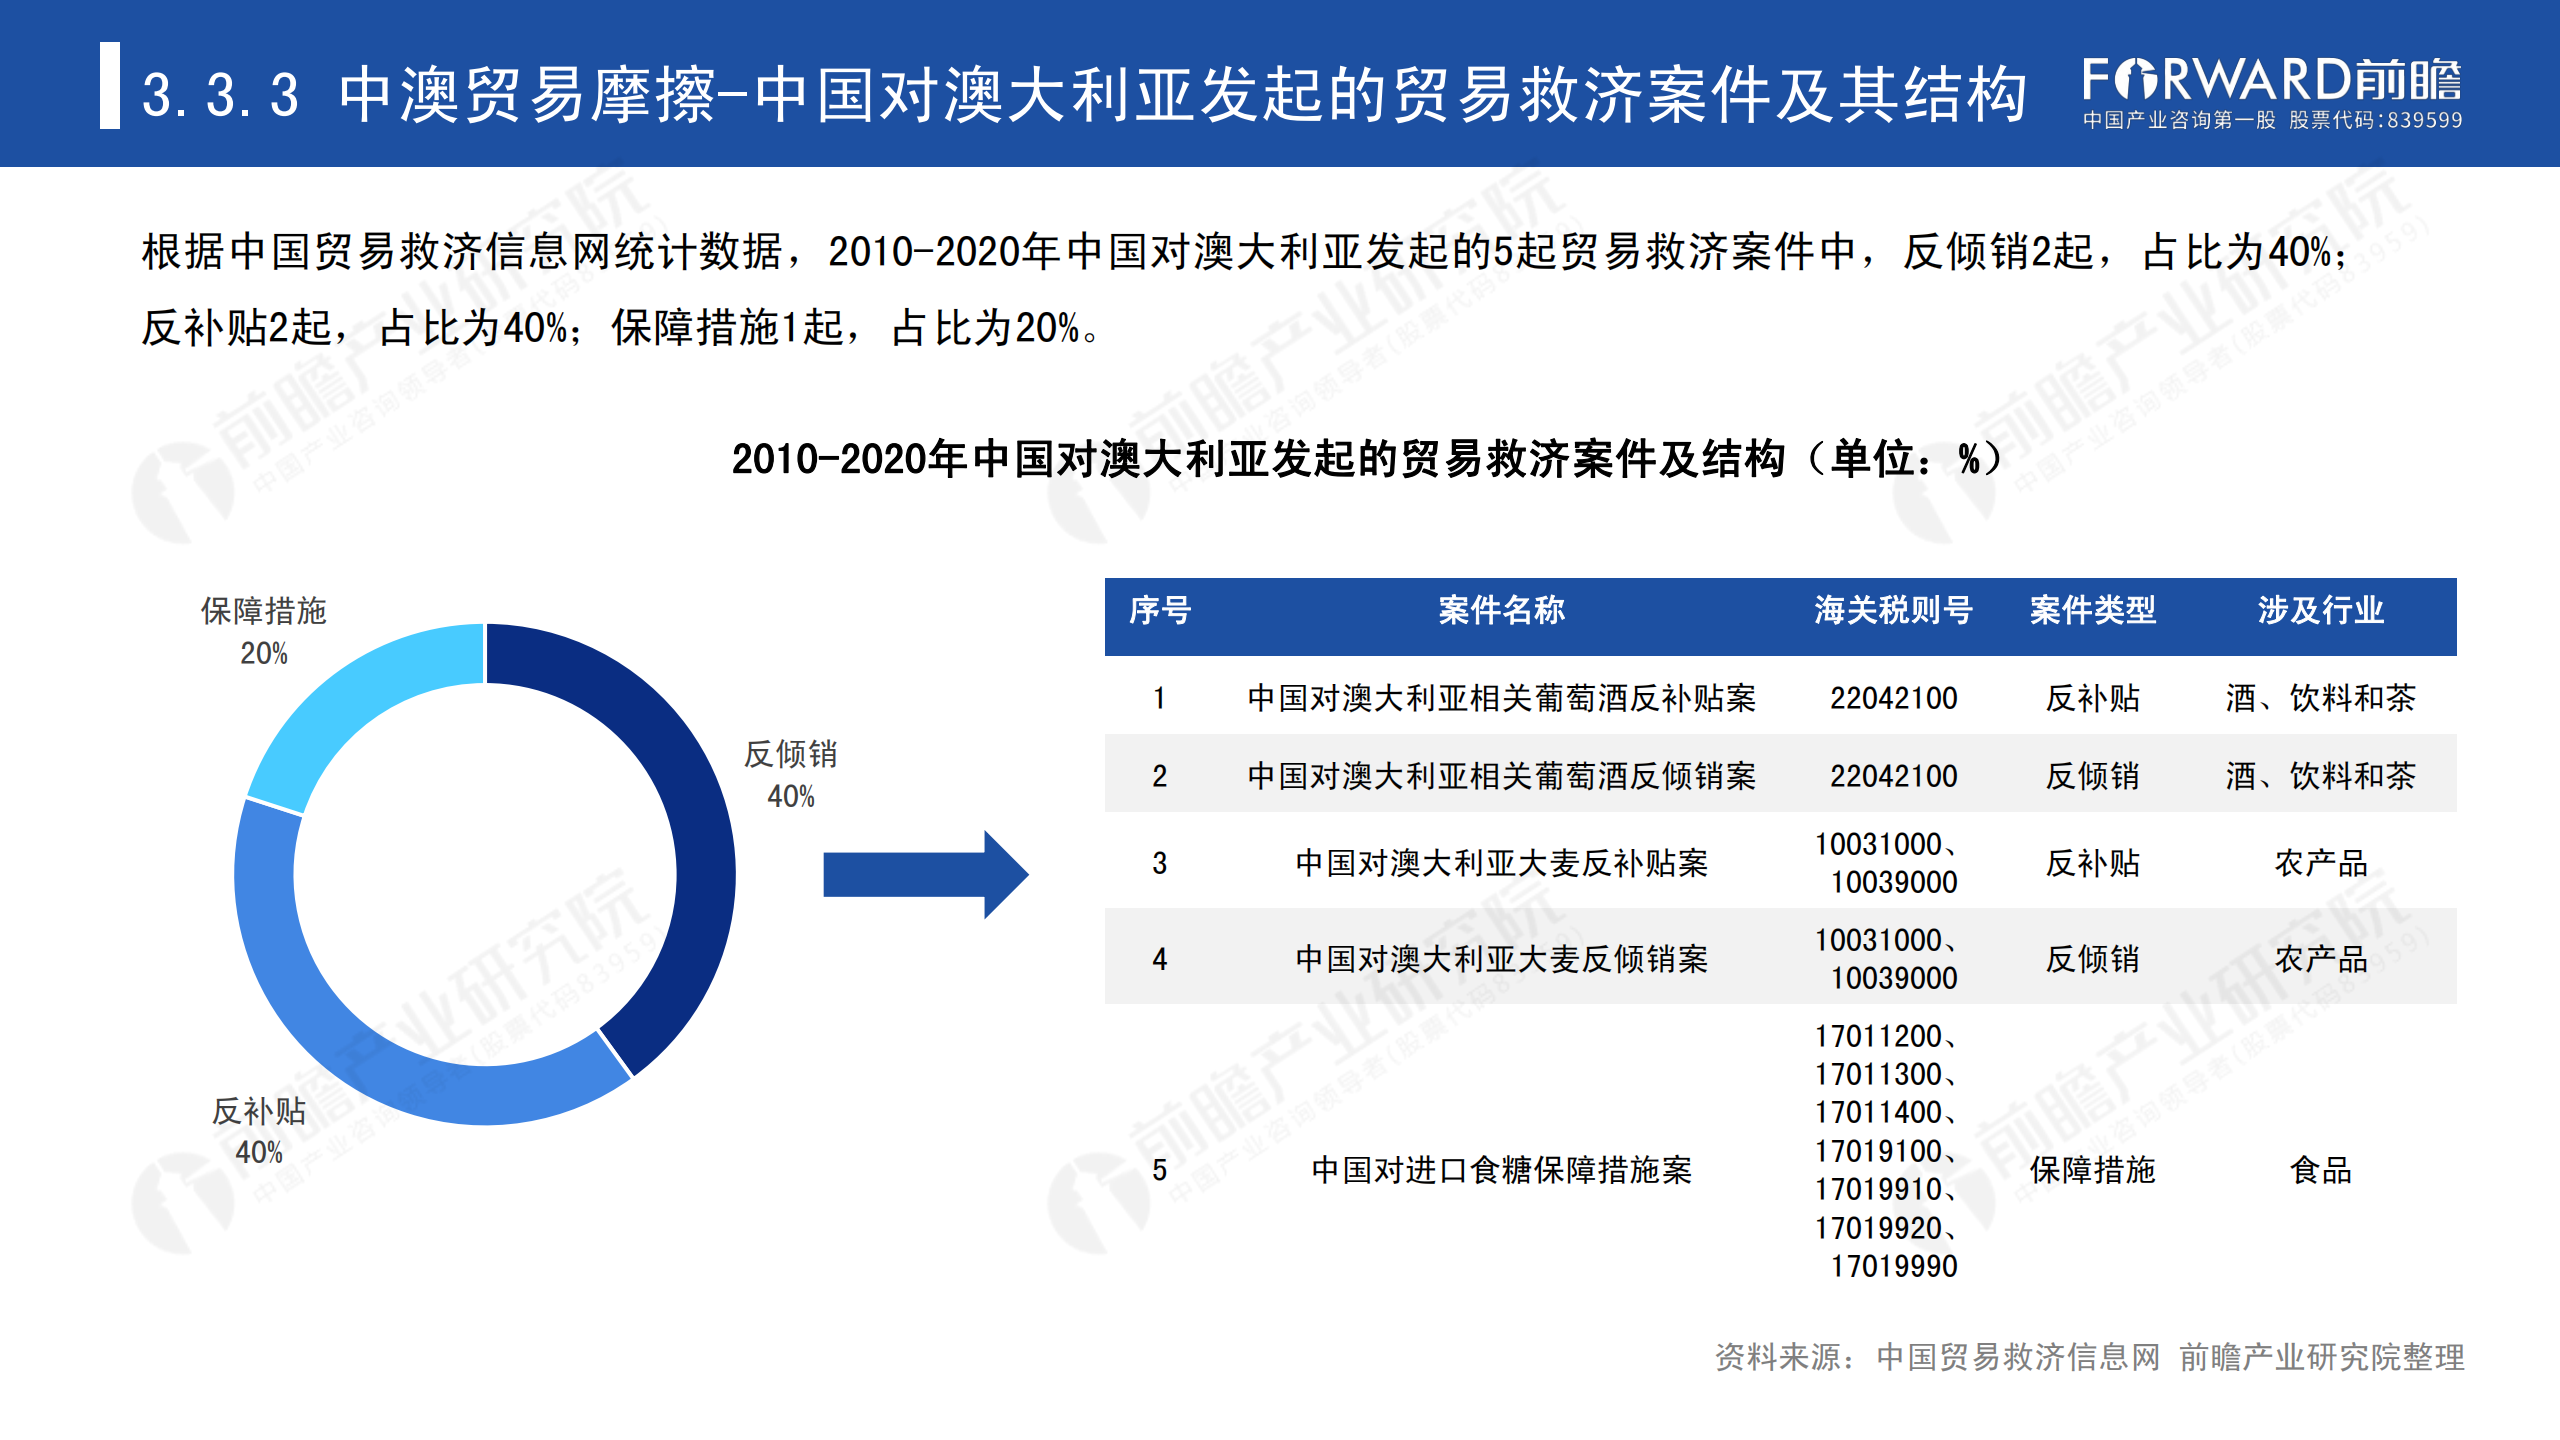 2020年中国贸易摩擦全景回顾-前瞻-2021-64页_45.png